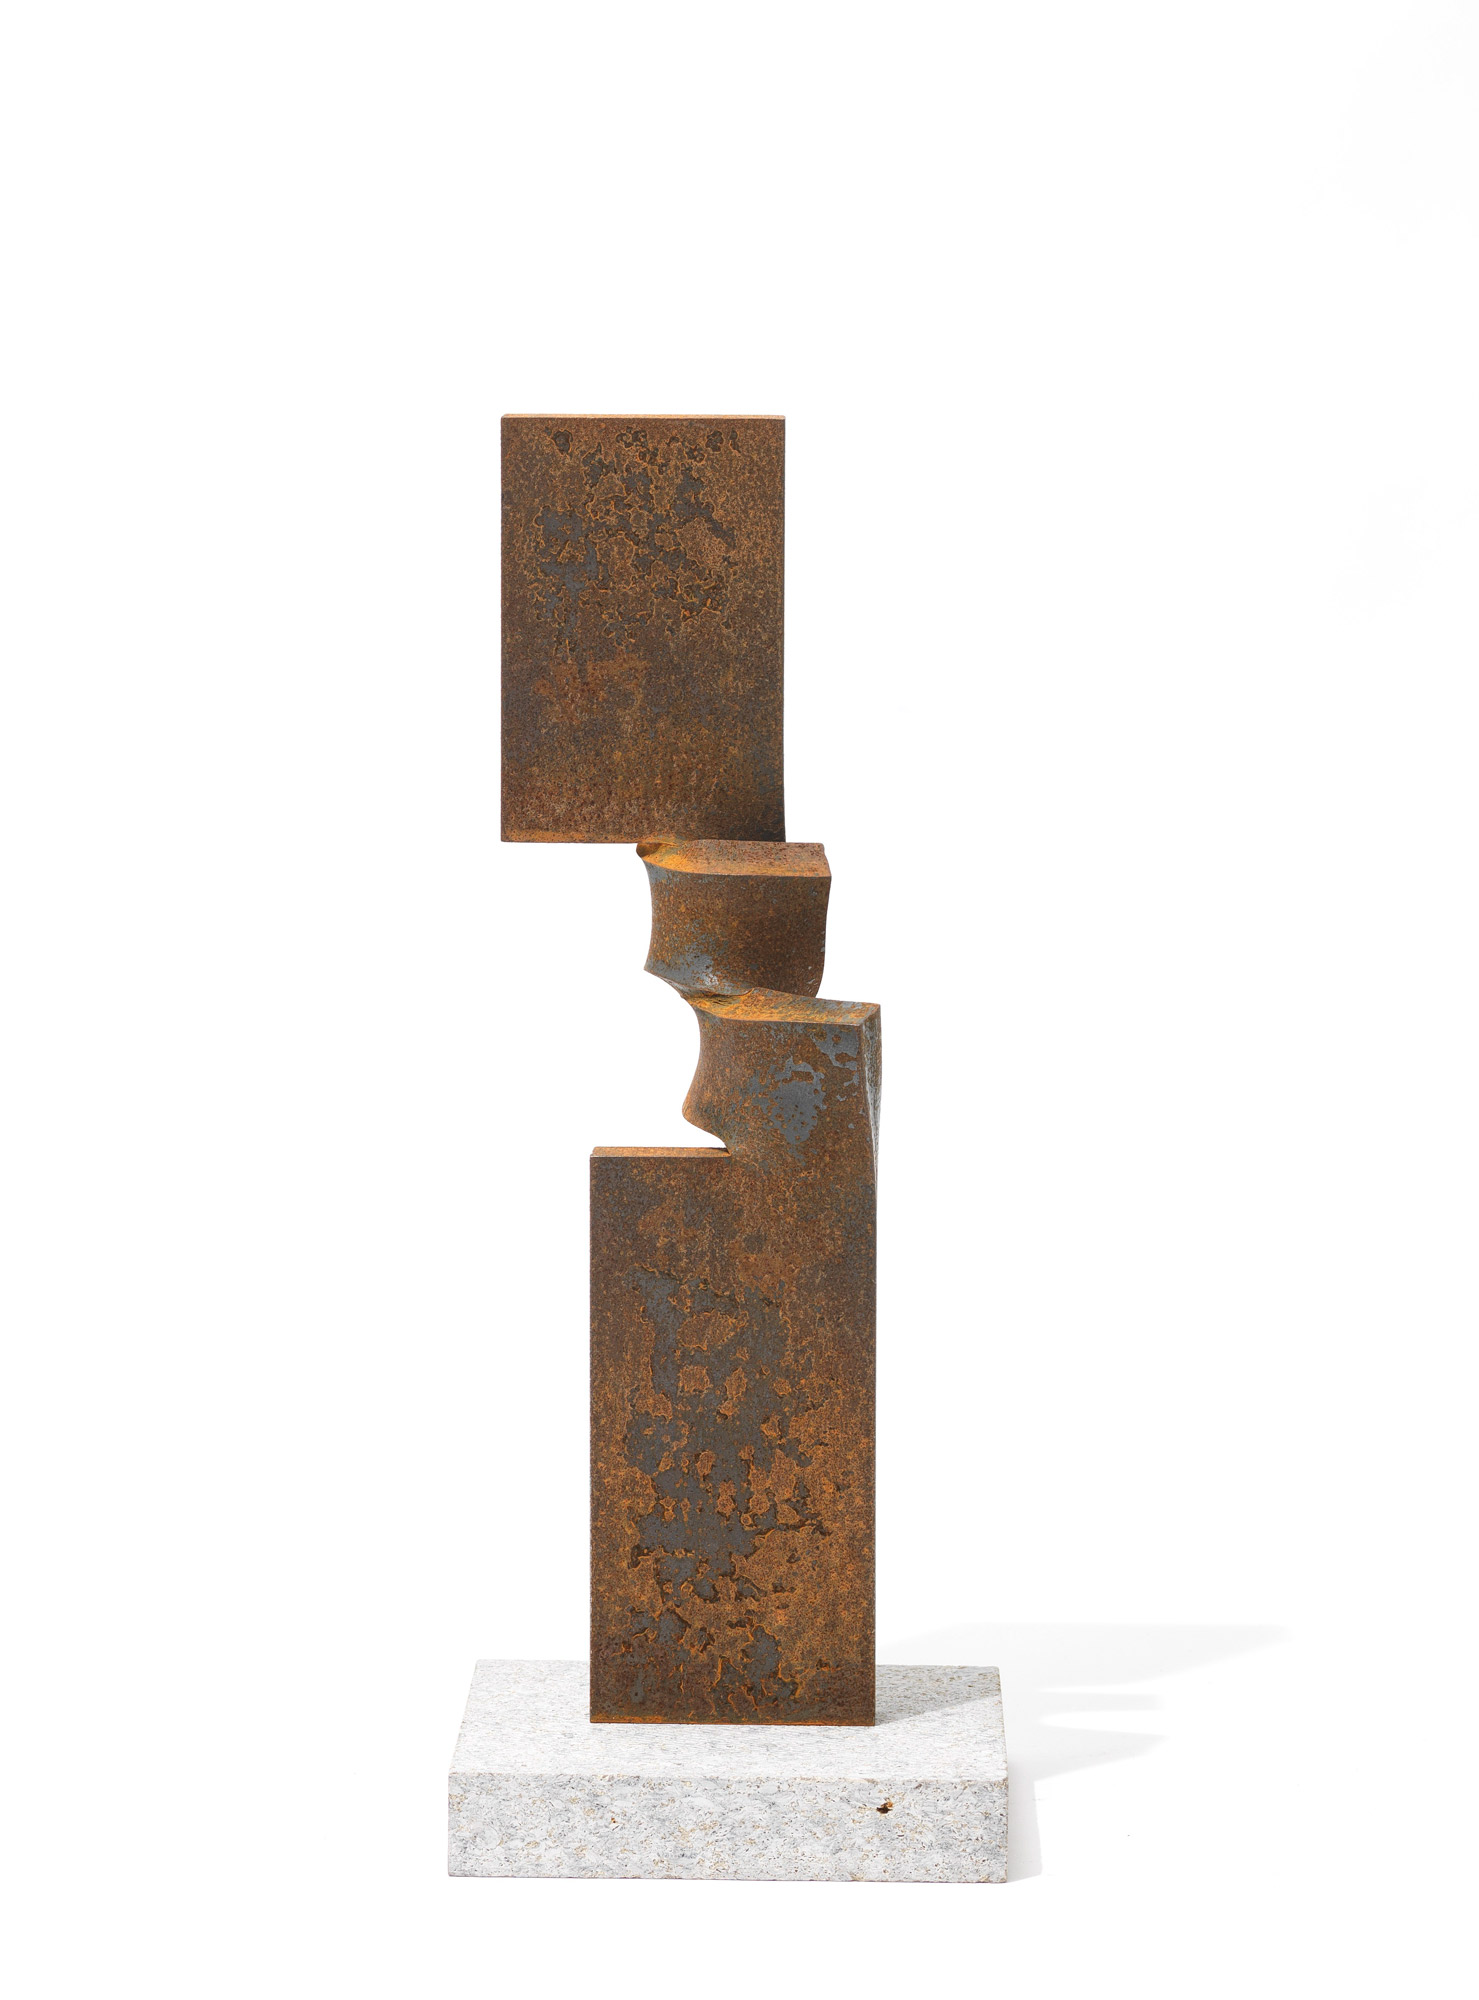 Skulptur "Drehung XXIII" (2021) (Unikat) by Thomas Röthel